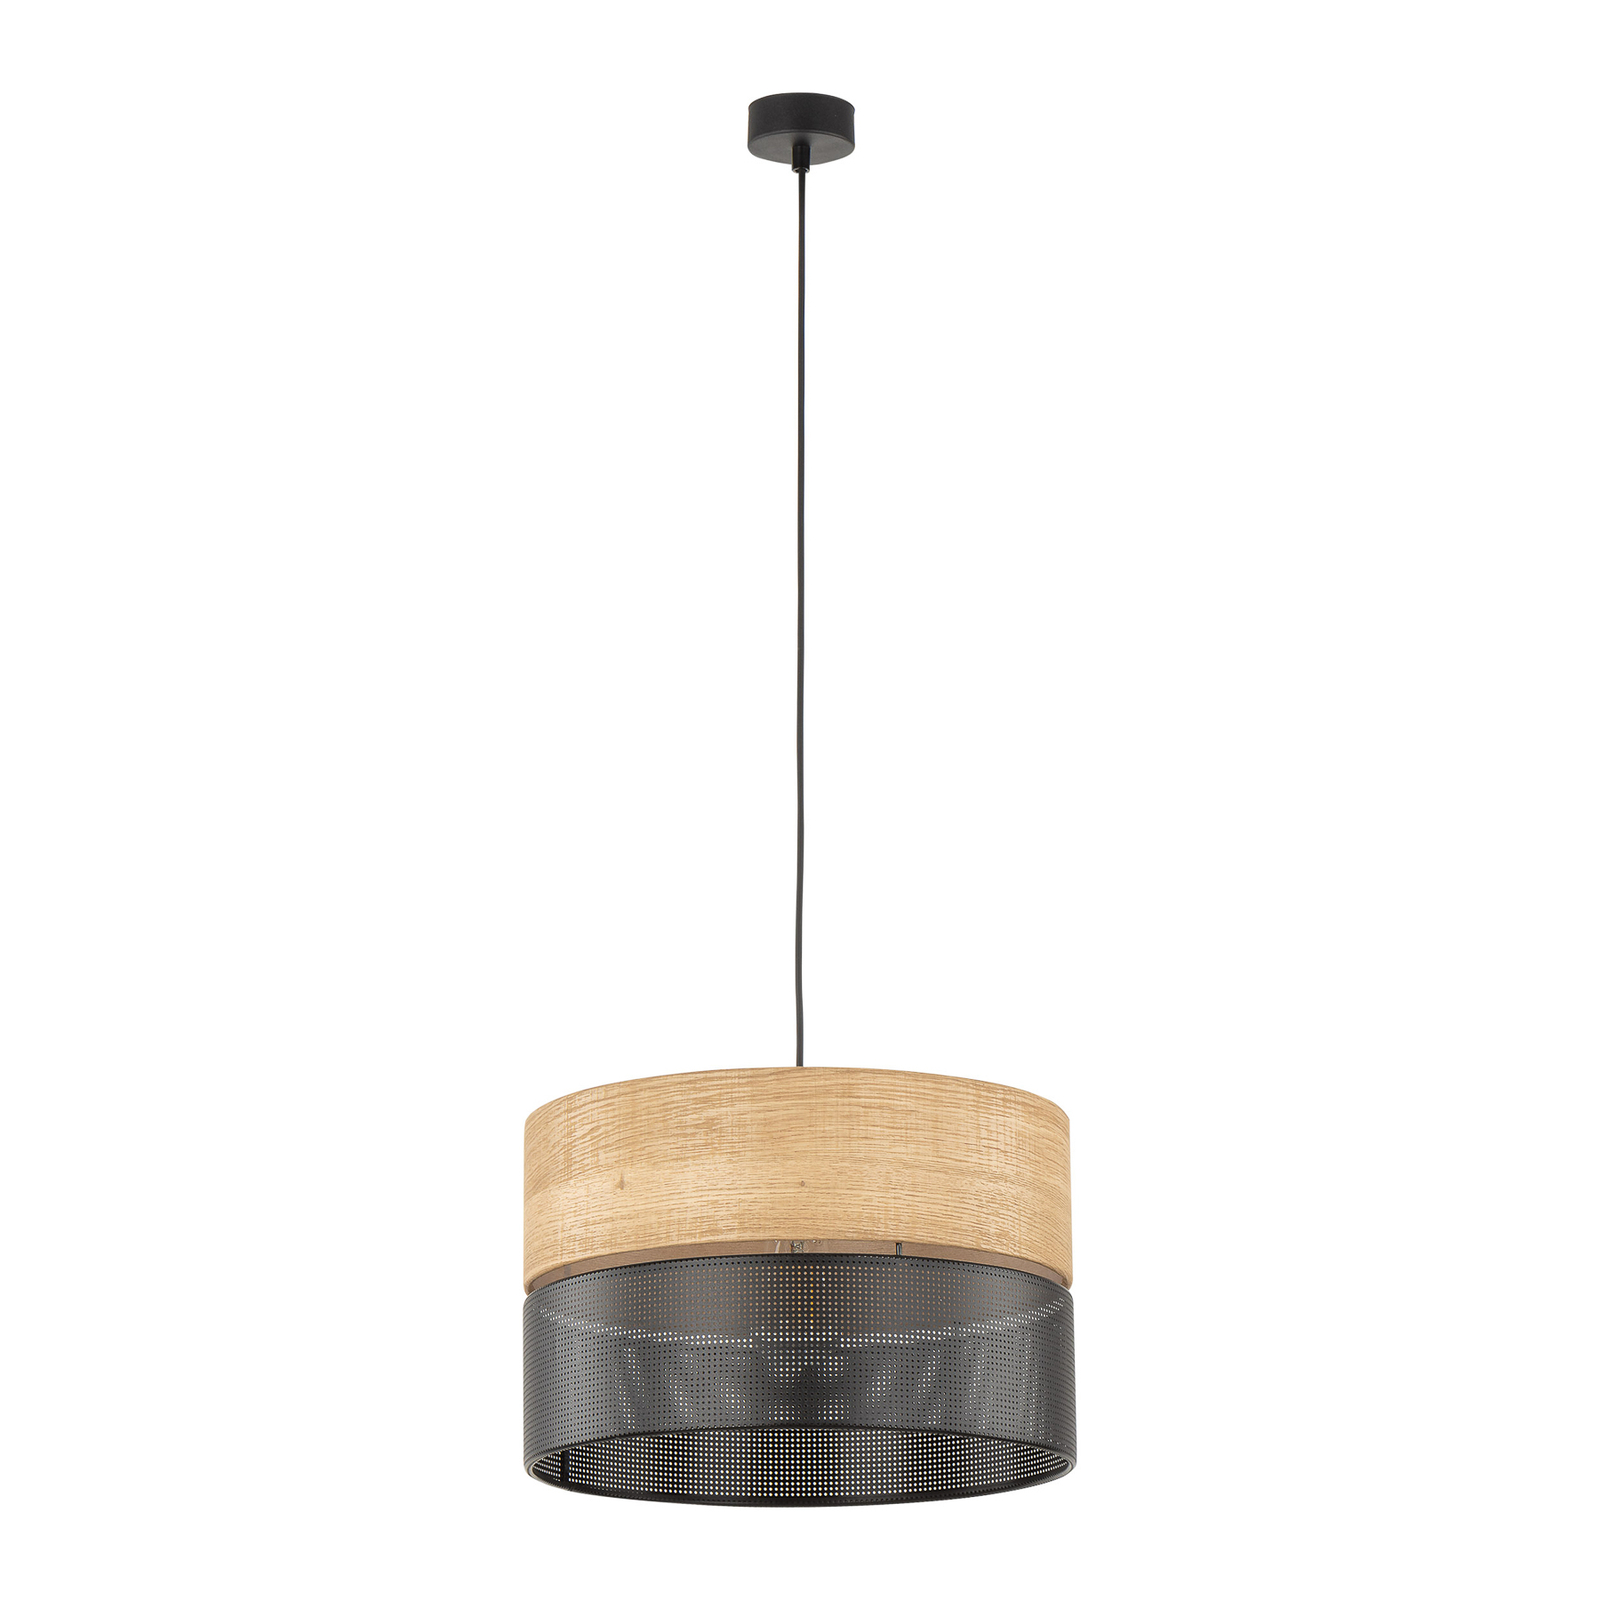 Viseća lampa Nicol, izgled crna/drvo, Ø 38 cm, 1 žarulja. 1 x E27